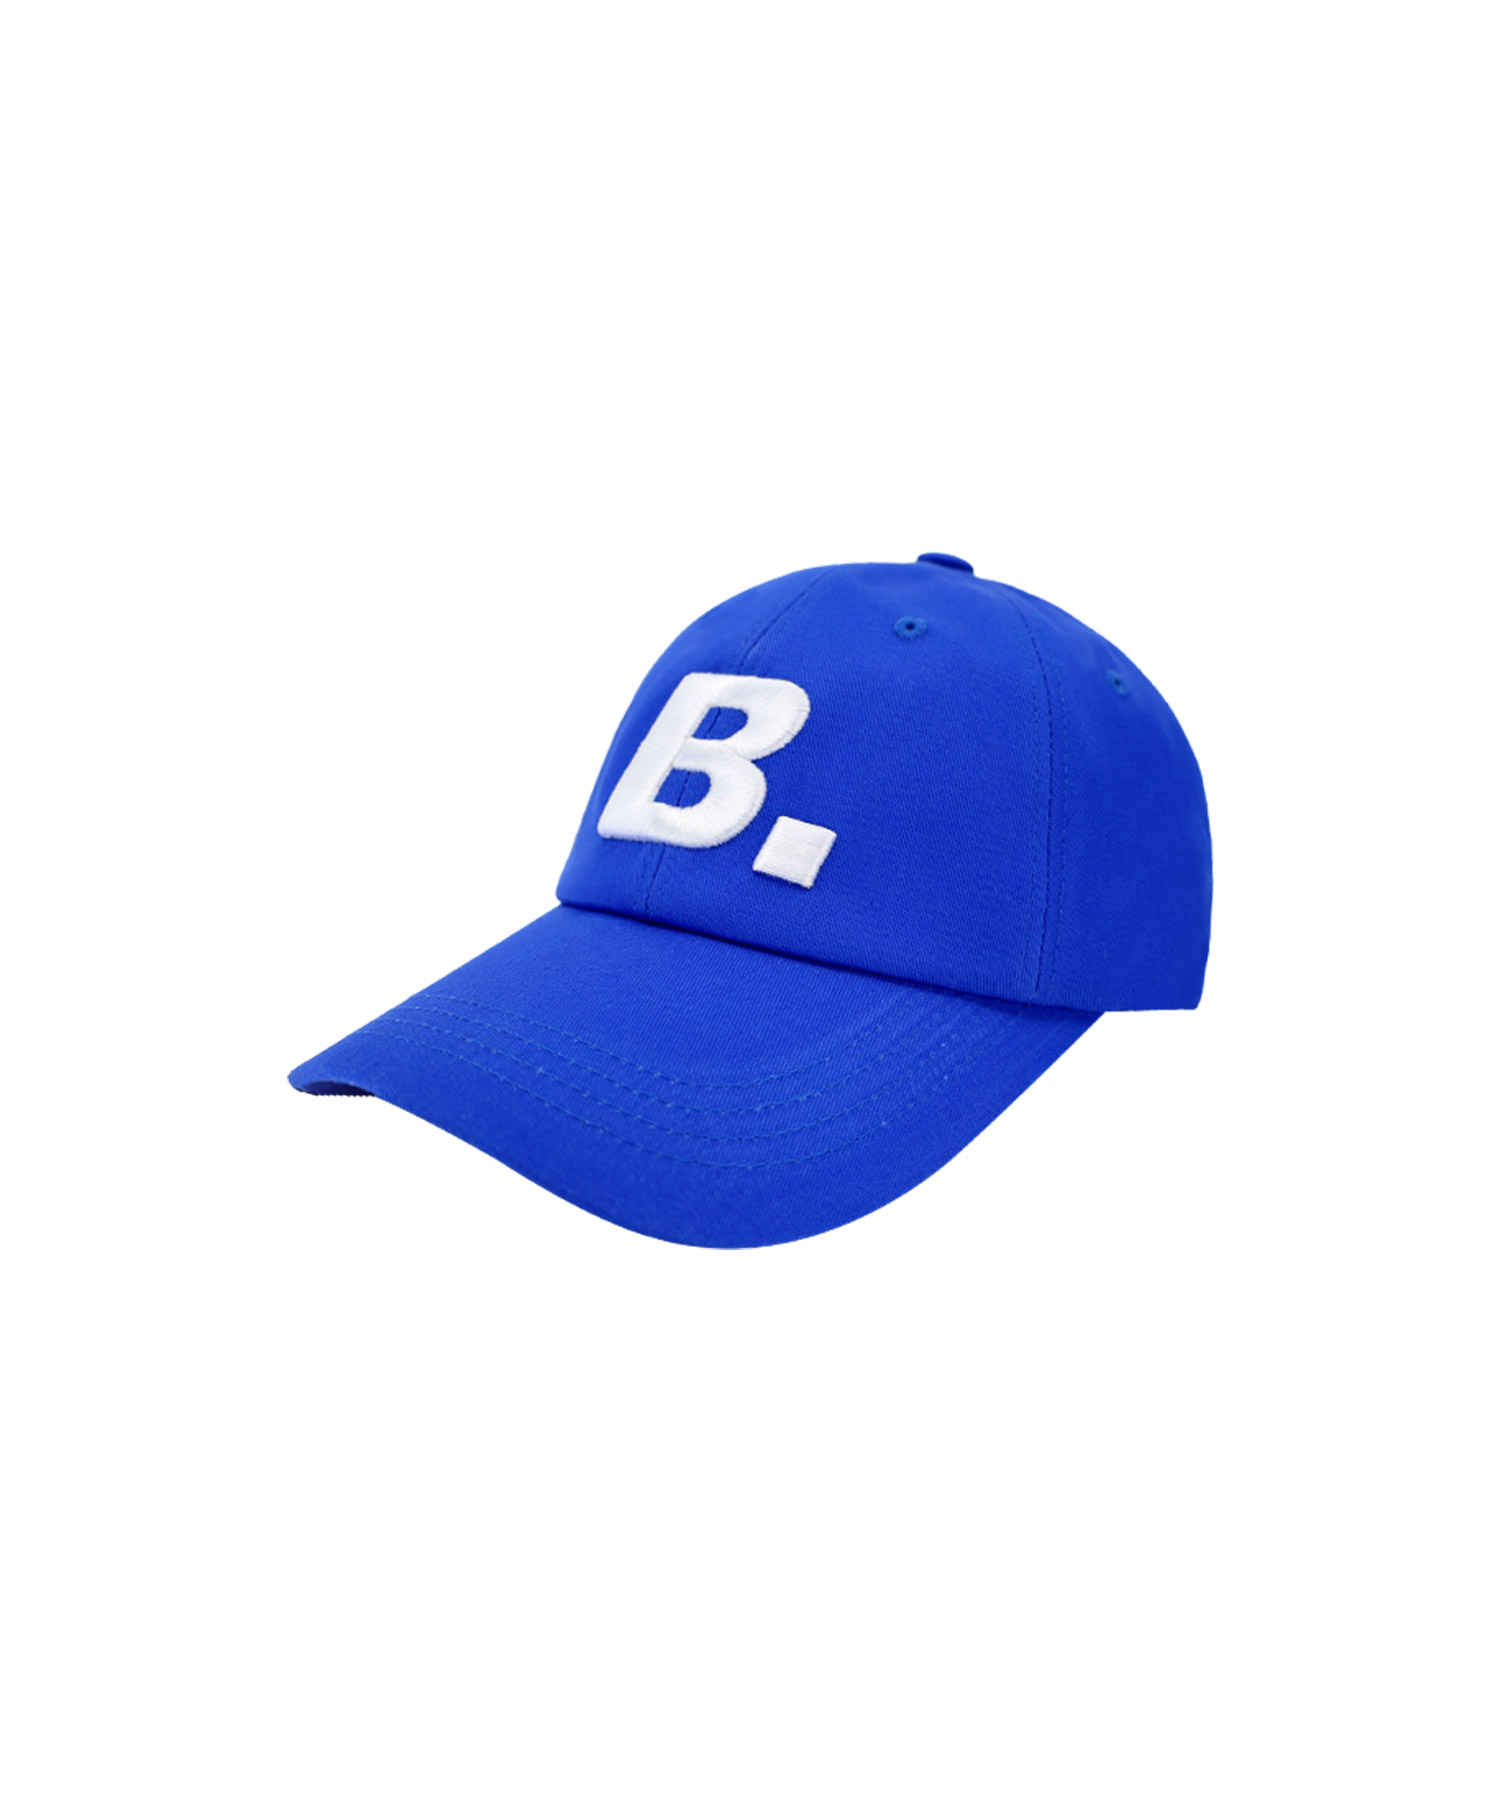 B. CAP [BLUE]